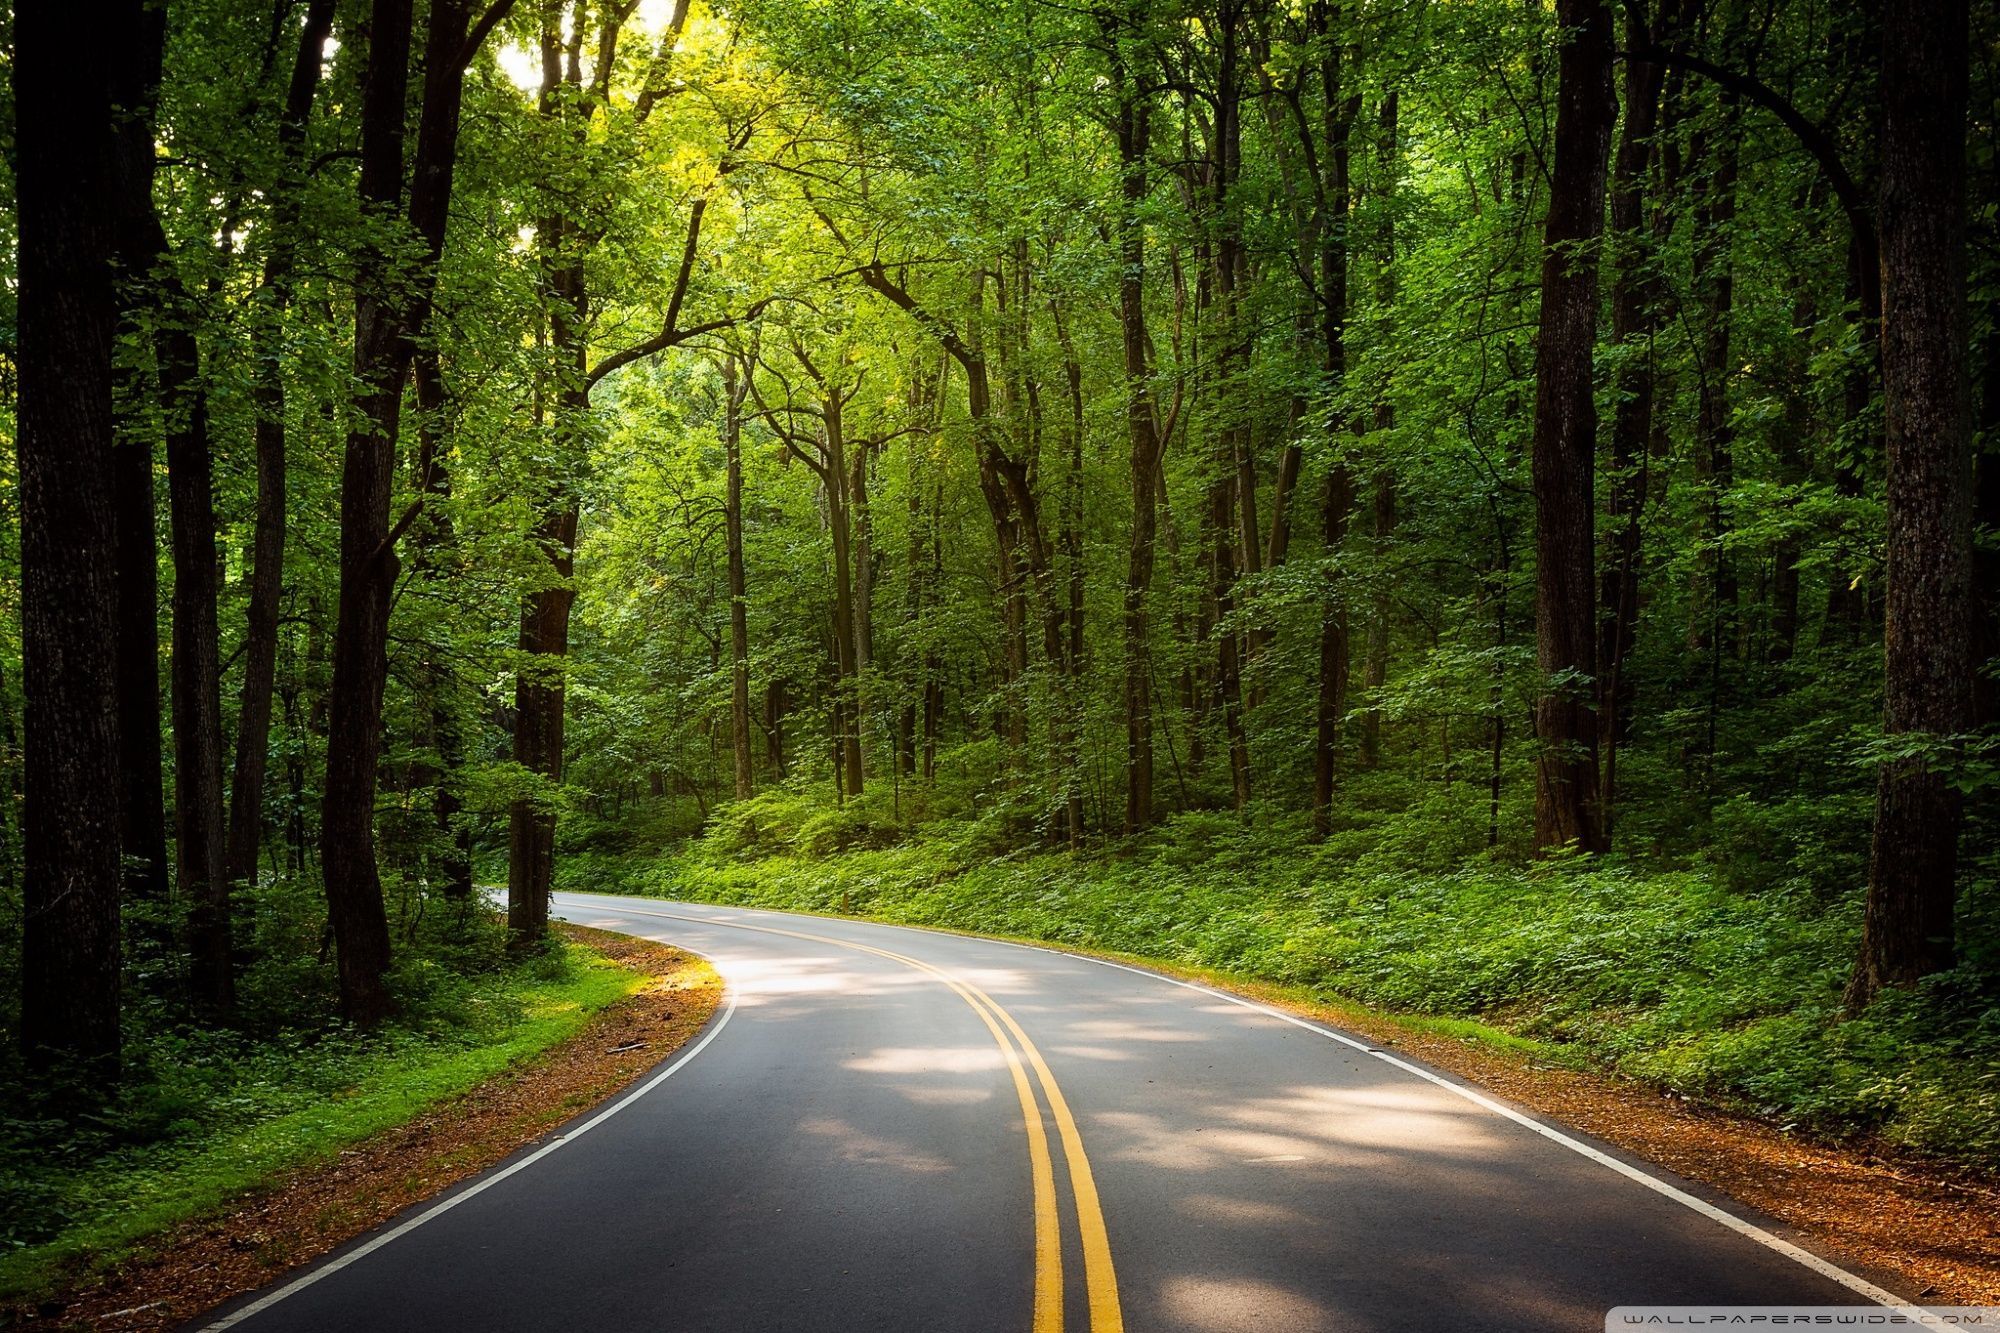 Hành trình trên đường xanh sẽ làm cho bạn cảm thấy mát mẻ và thoải mái khi đi qua thiên nhiên xanh rậm. Hãy cùng chúng tôi khám phá những con đường xanh tuyệt đẹp trong hình ảnh!